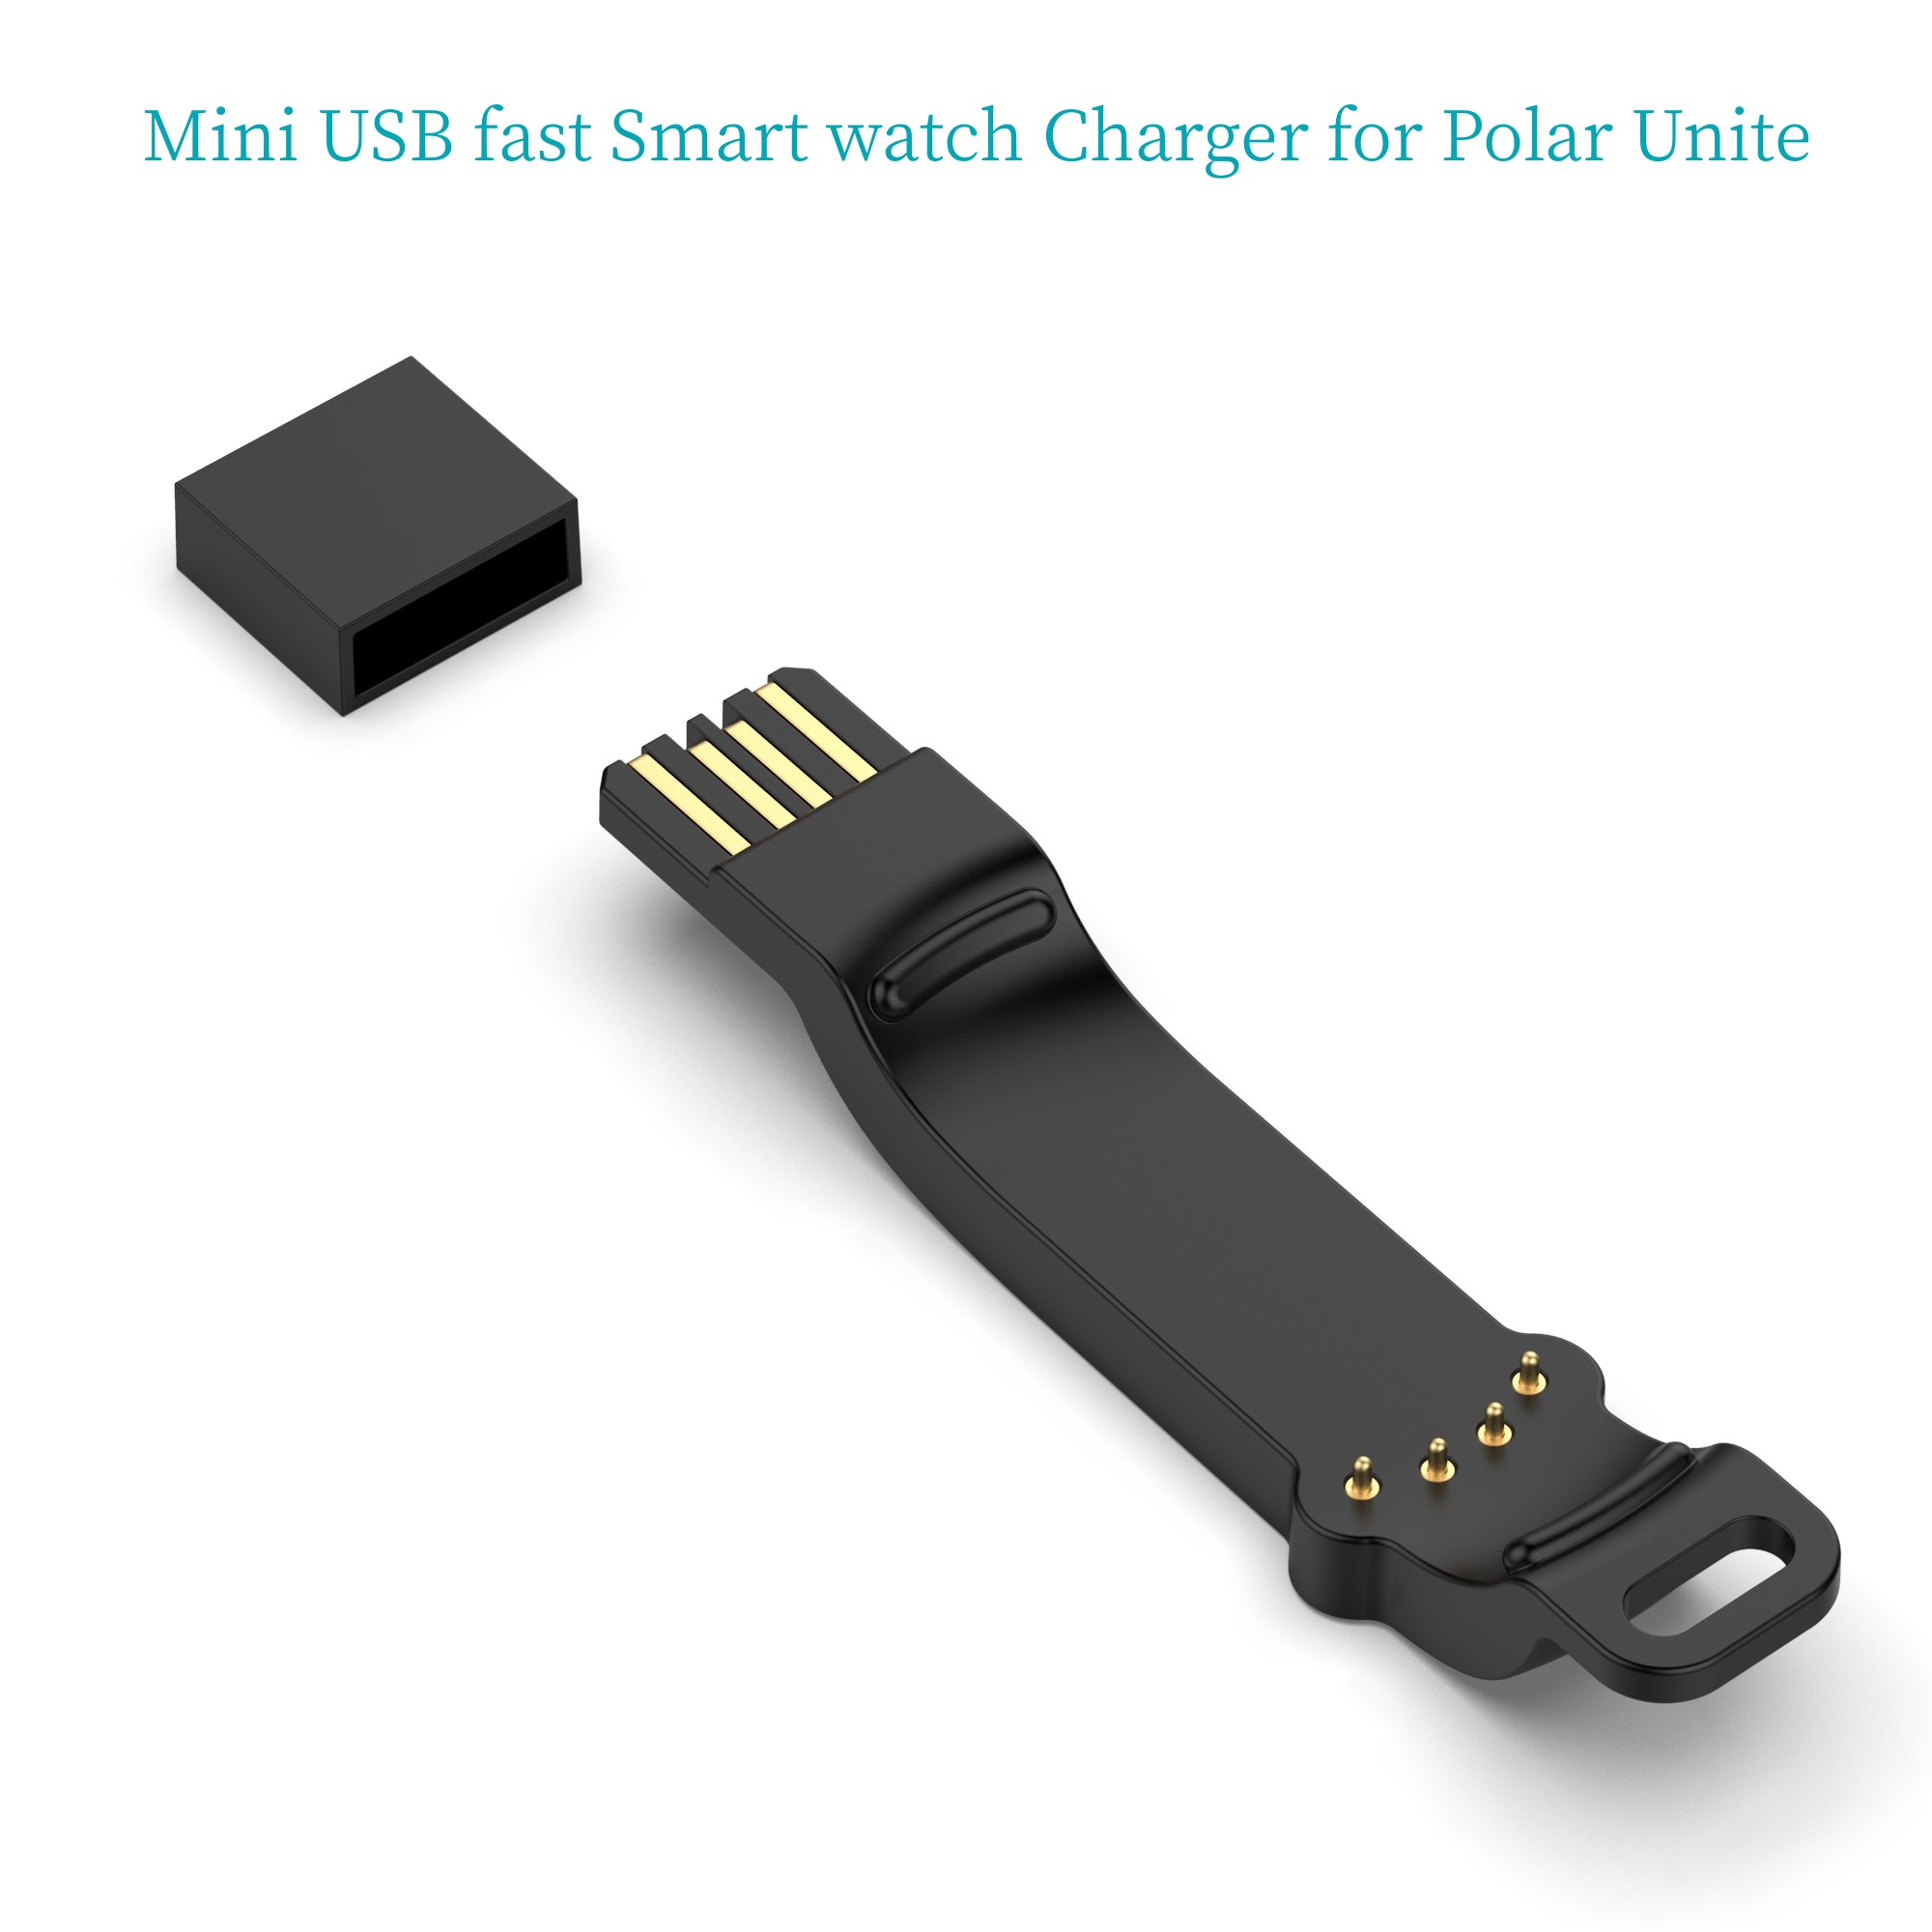 Adattatore di ricarica per caricabatterie USB veloce Smart Watch per Polar Unite